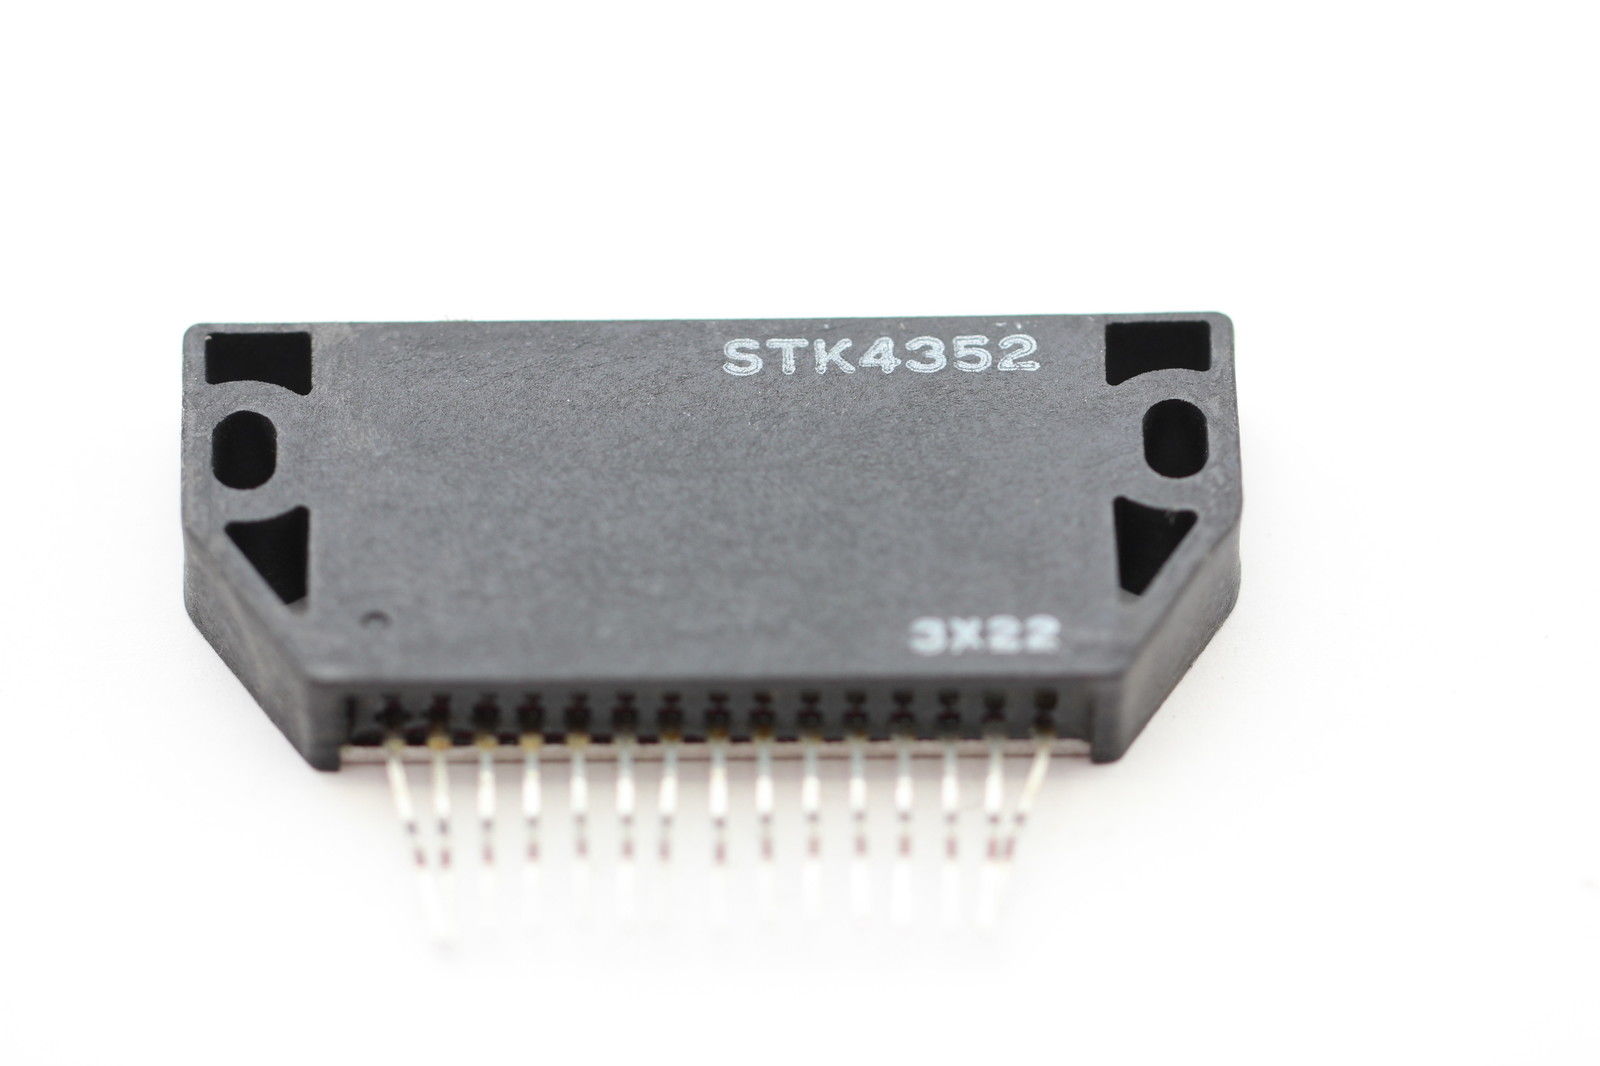 STK4352